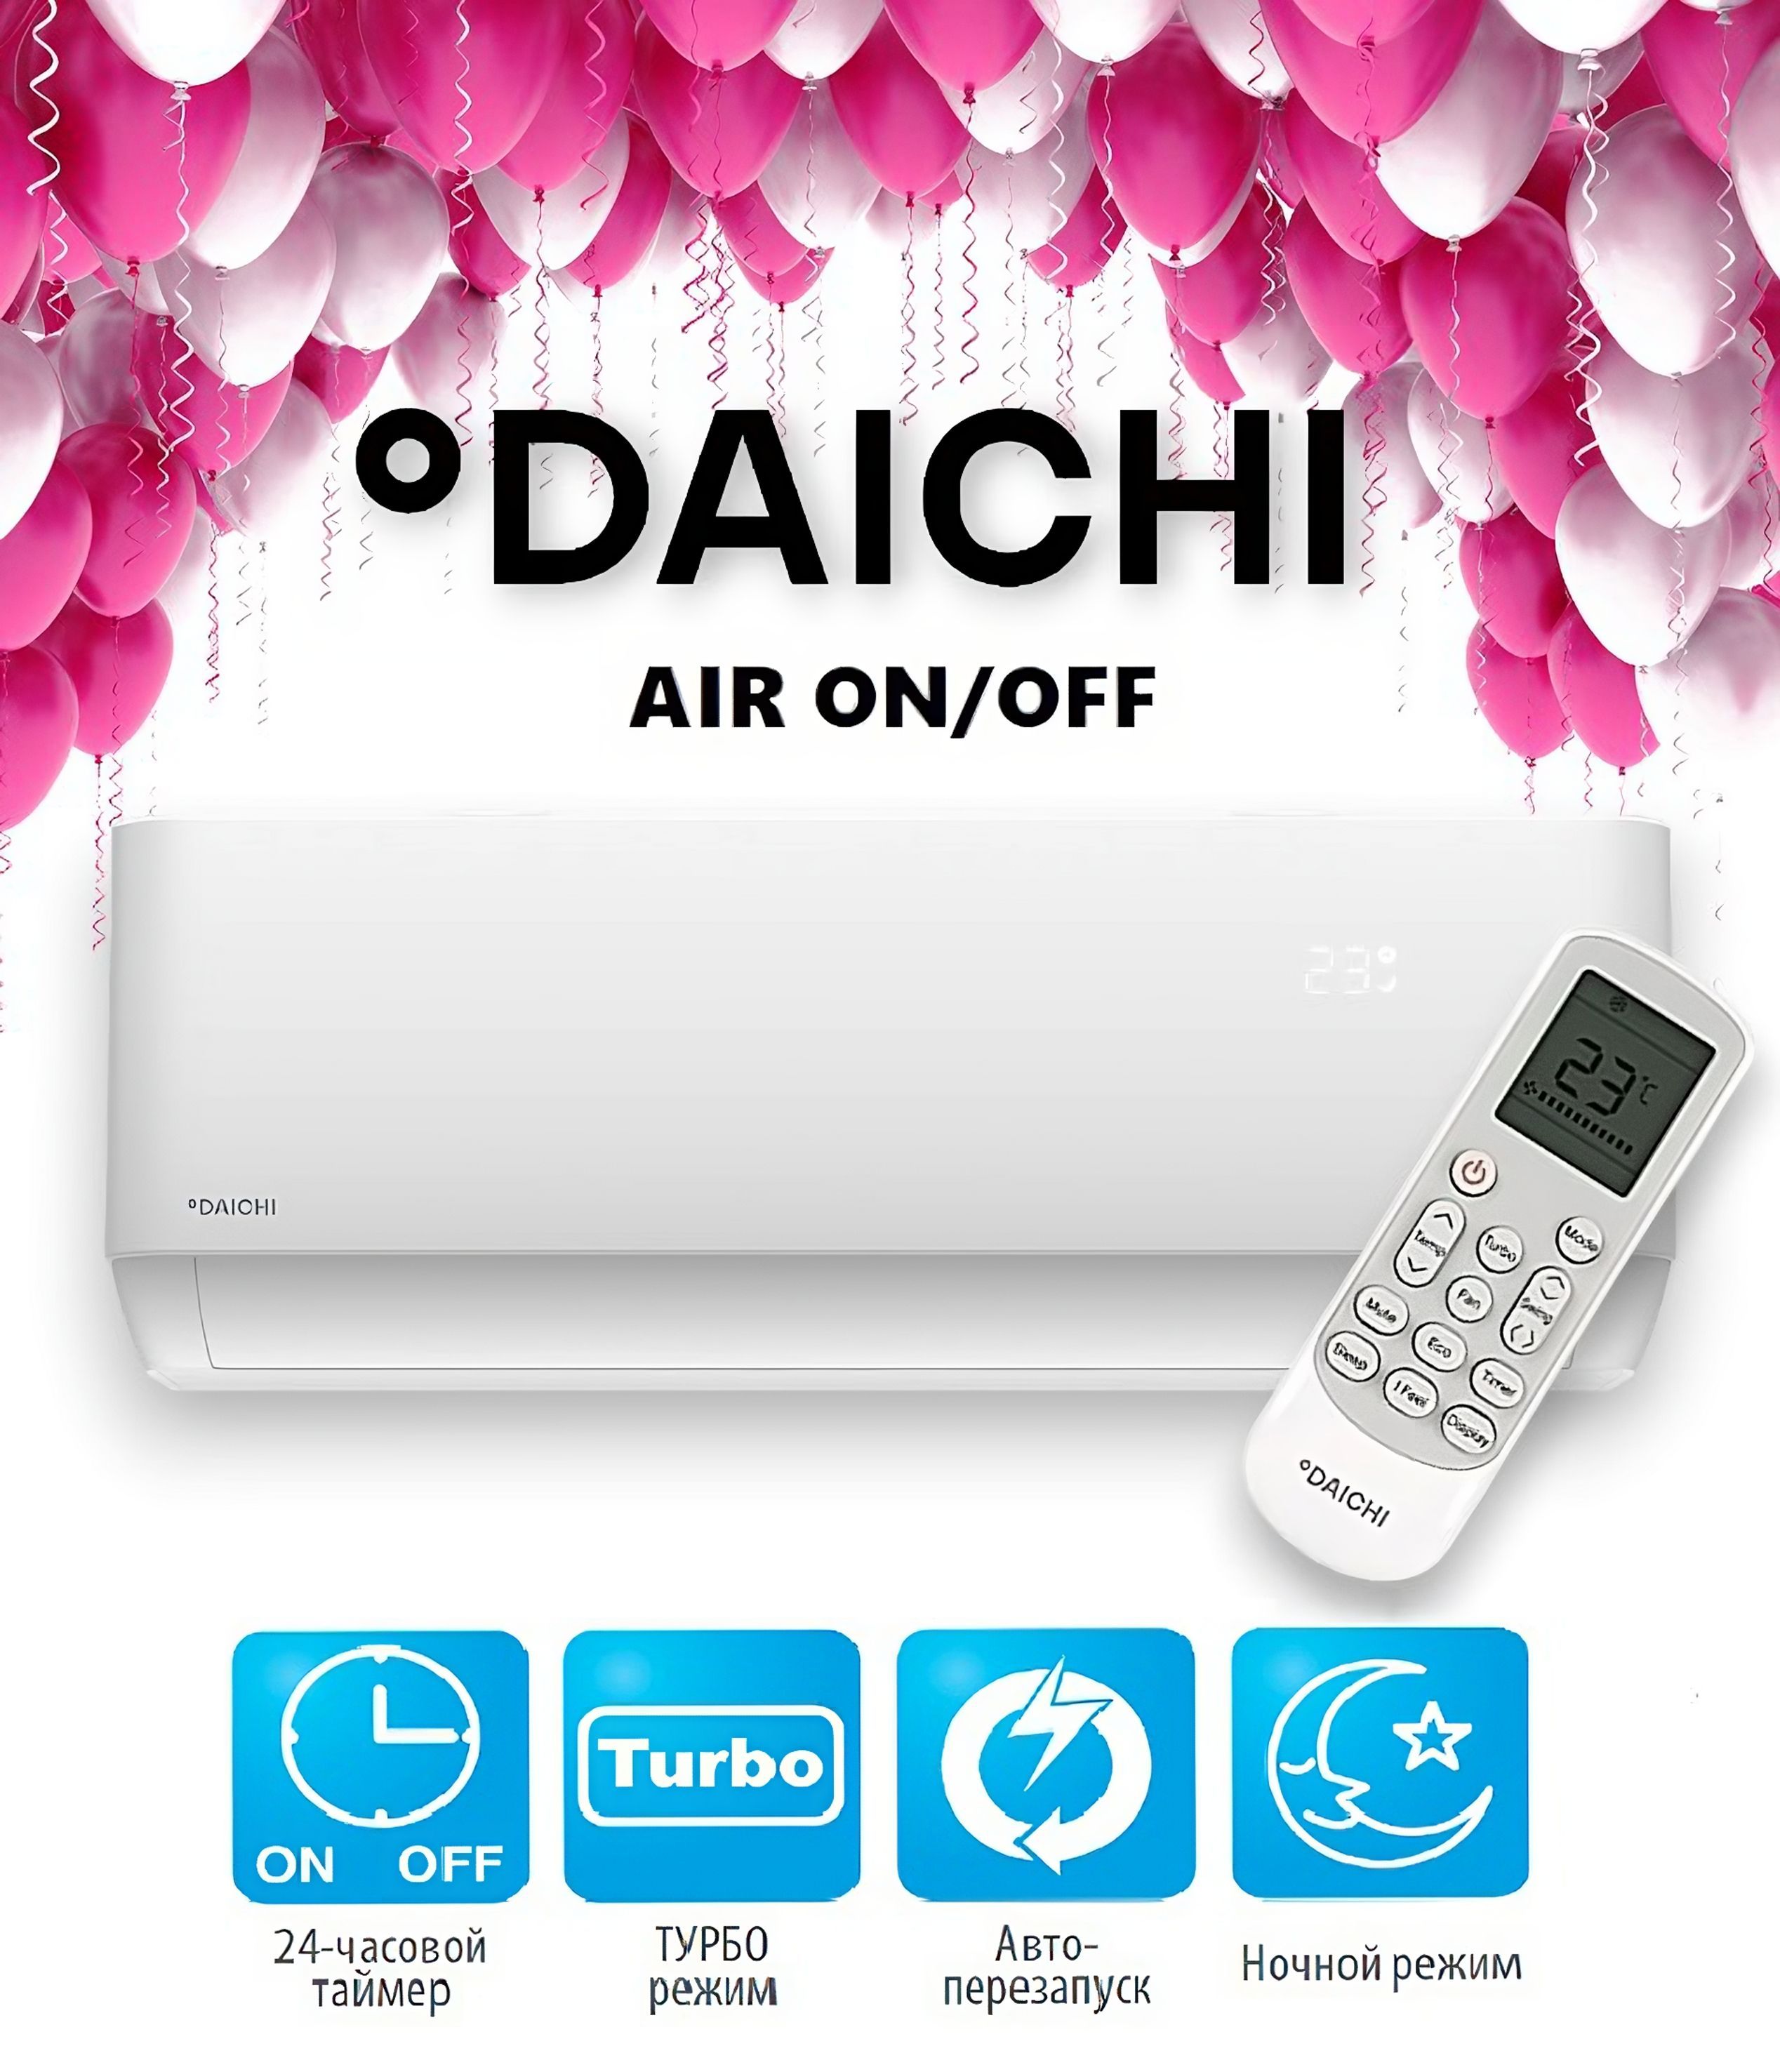 Air25avq1 air25fv1. Daichi Air air25avq1/air25fv1. Daichi Air 20. Daichi air25avq1/air25fv1 сертификат. Daichi Air Air air20avq1/air20fv1 USB.